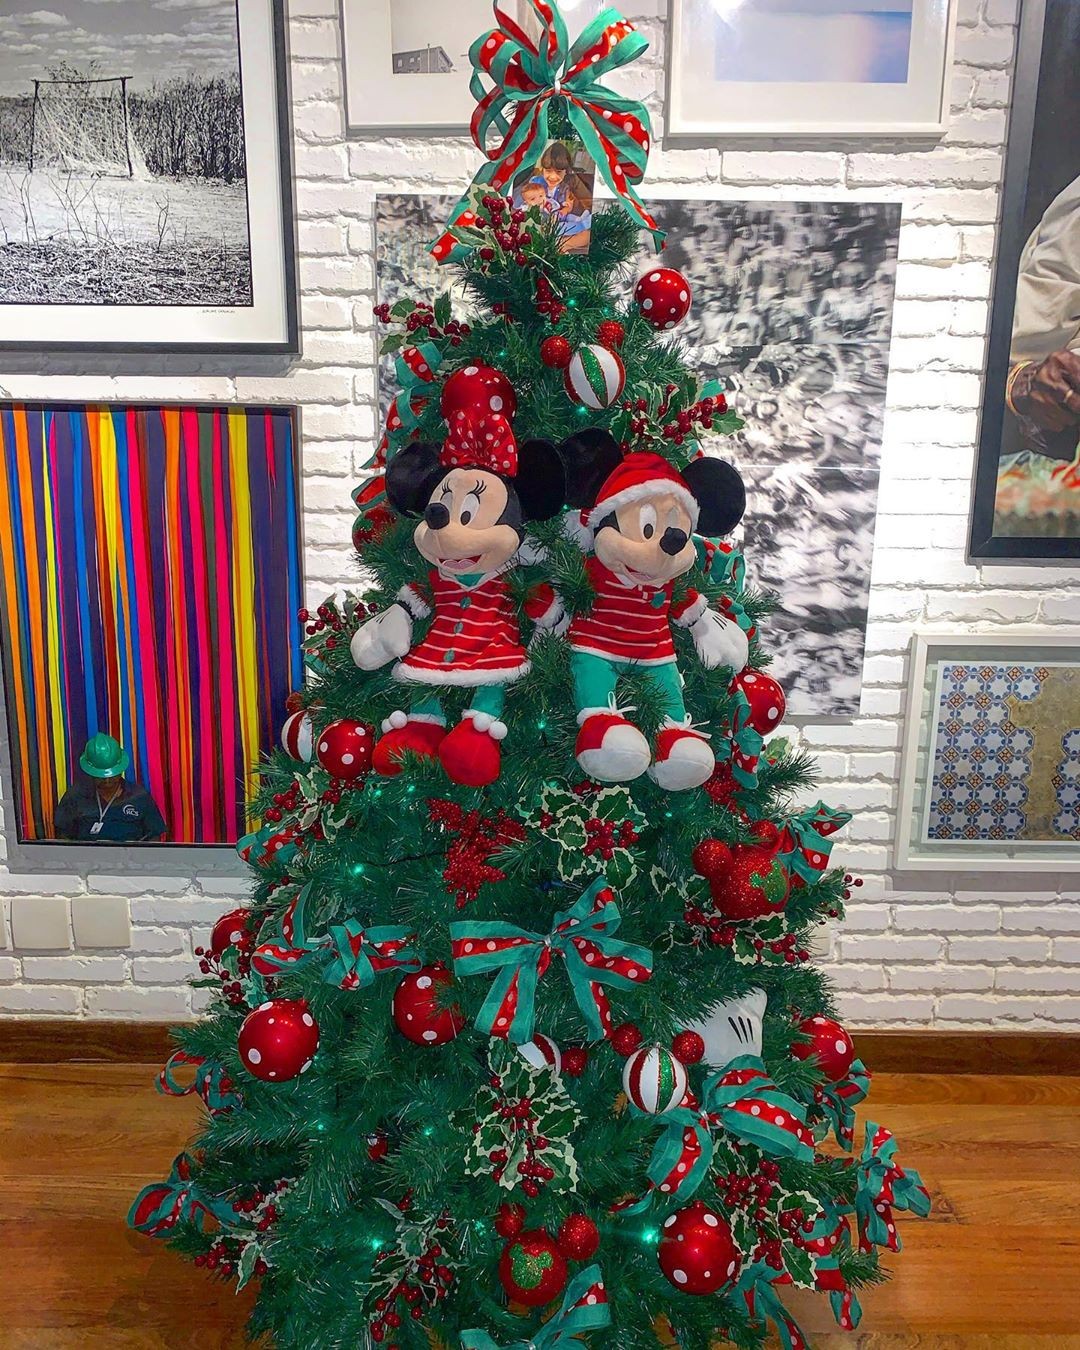 Mickey, ursinhos, tudo pink: veja árvores de Natal de famosos - Revista  Marie Claire | Celebridades